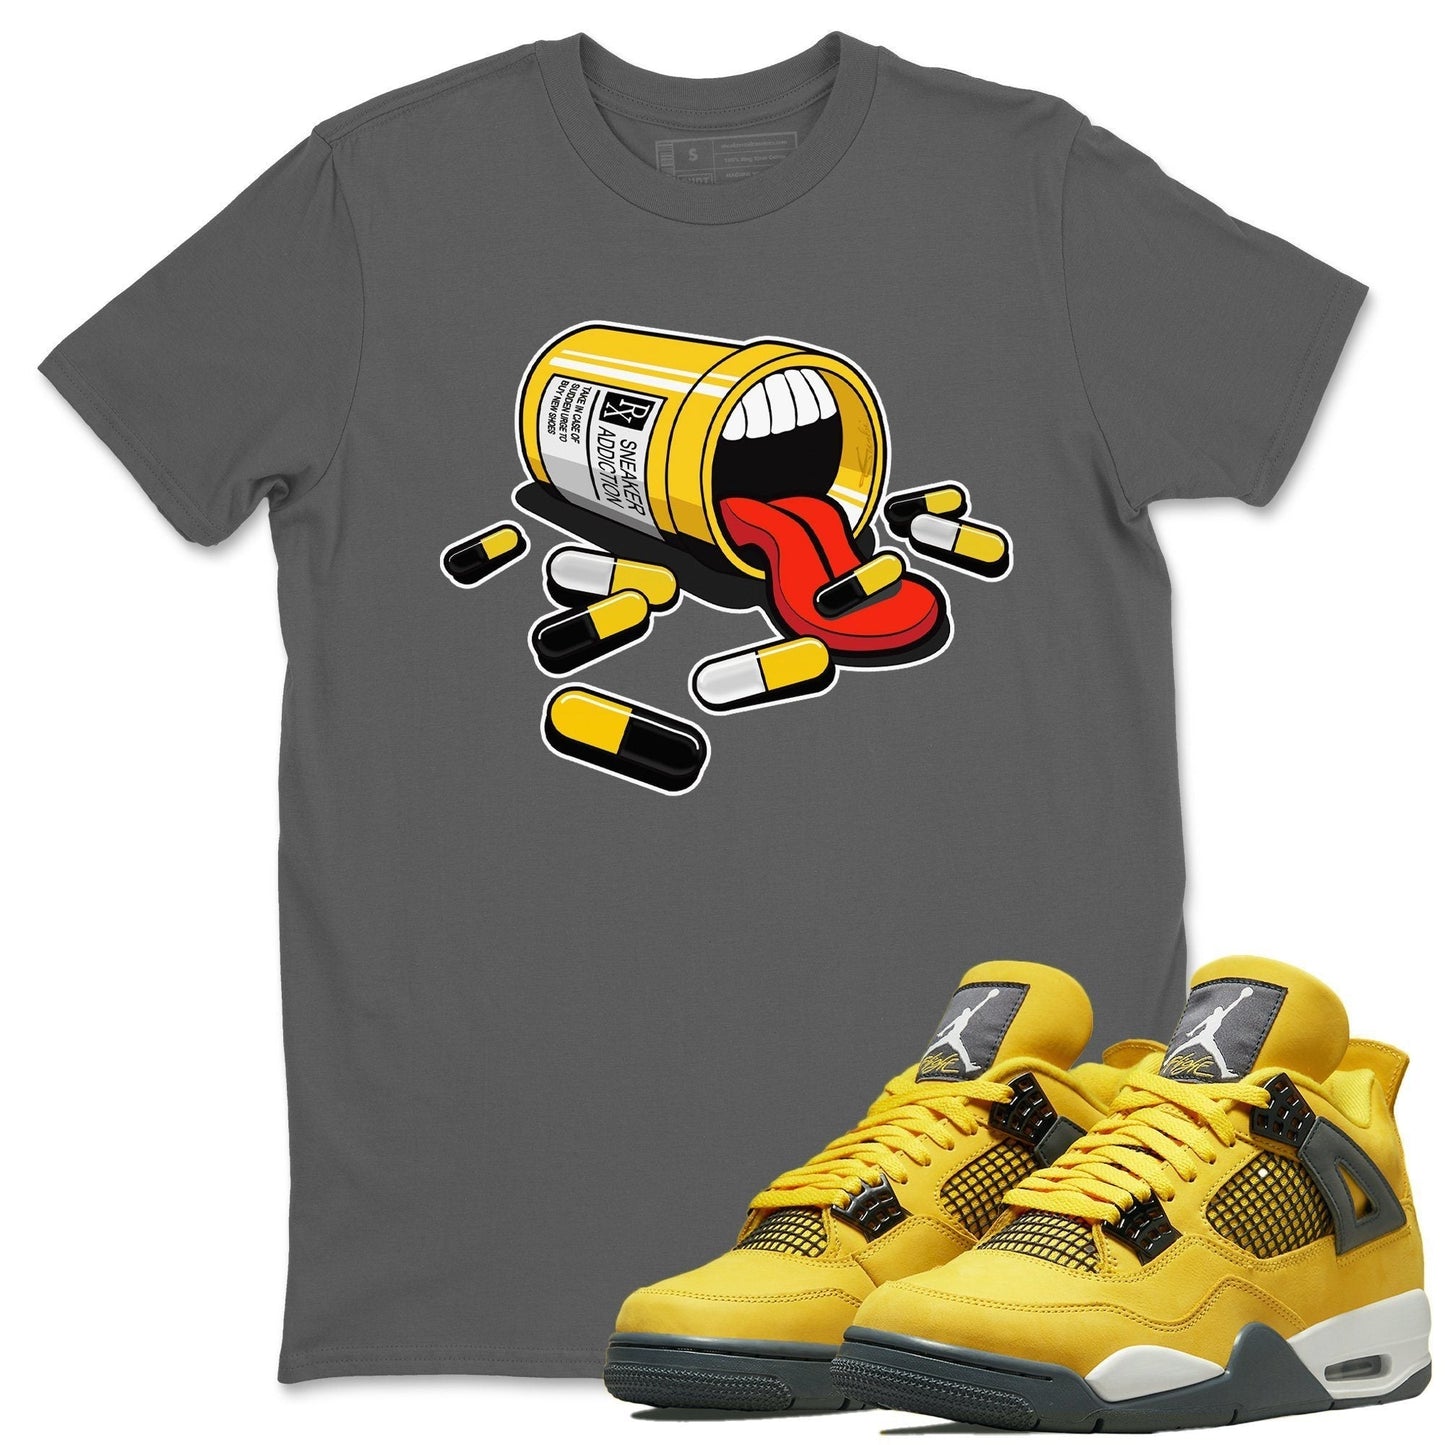 Jordan 4 Lightning Shirt To Match Jordans Sneaker Addiction Sneaker Tees Jordan 4 Lightning Drip Gear Zone Sneaker Matching Clothing Unisex Shirts